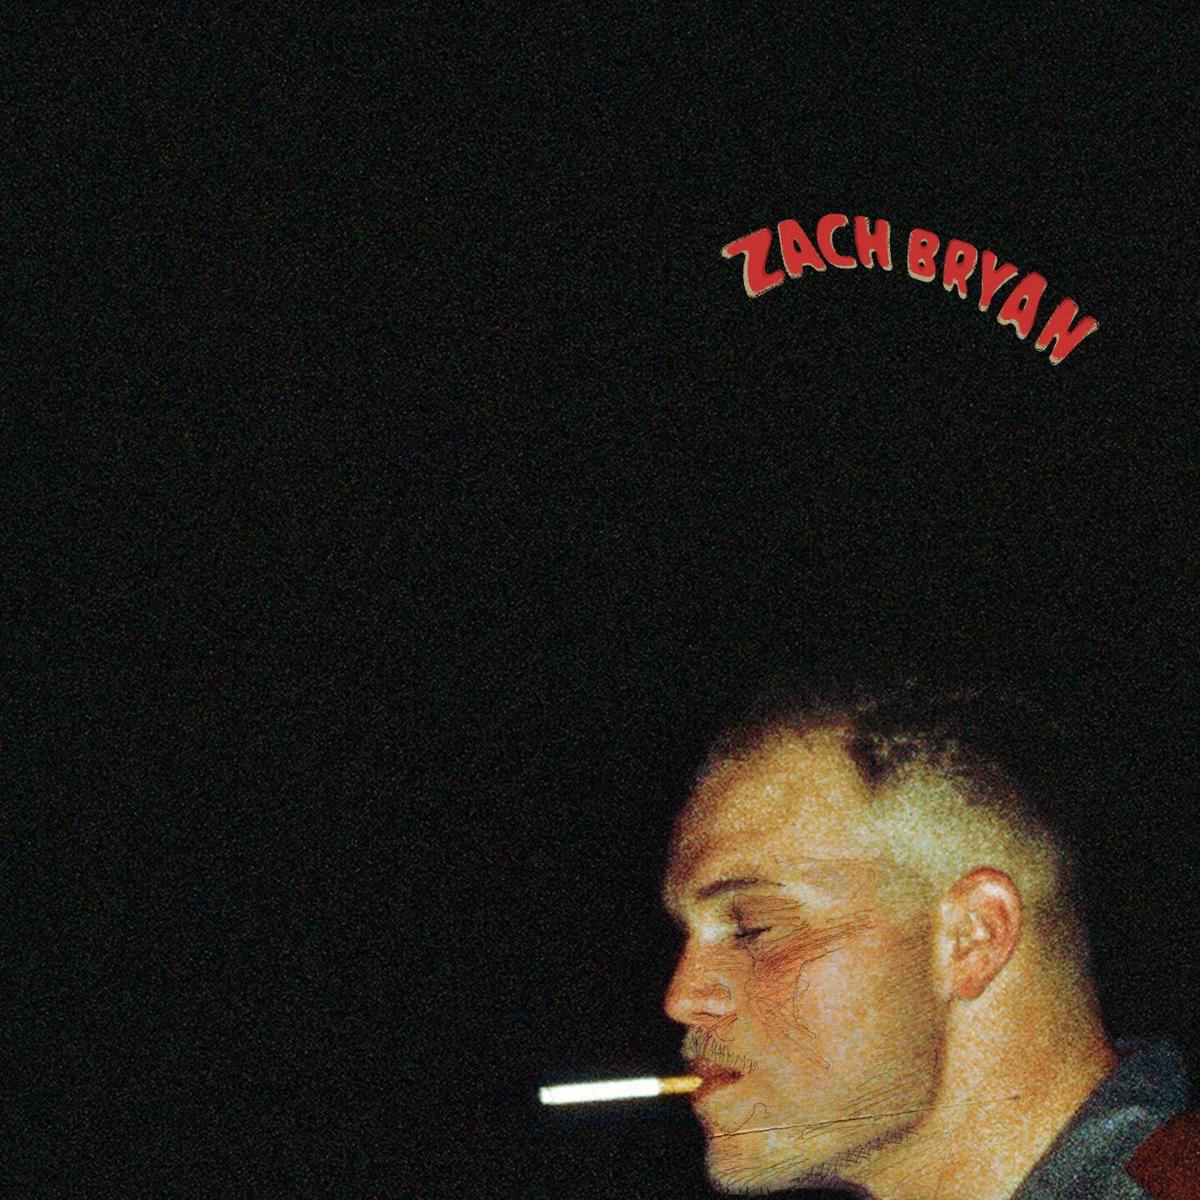 Zach Bryan Cover Album Photo Courtesy of Tulsa World